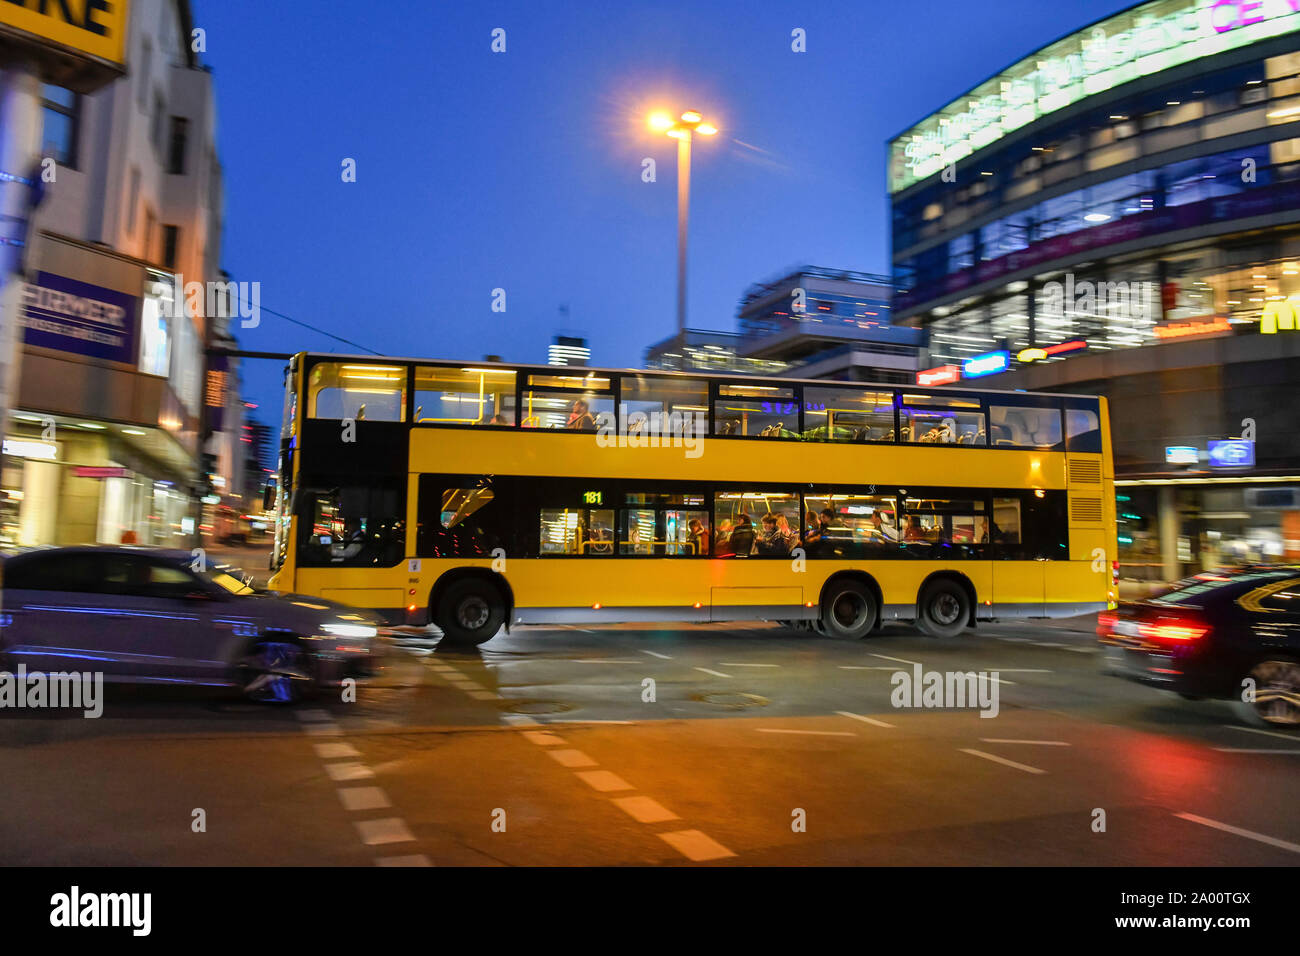 Nachtbus, Schlossstrasse, Steglitz, Berlin, Deutschland Stock Photo